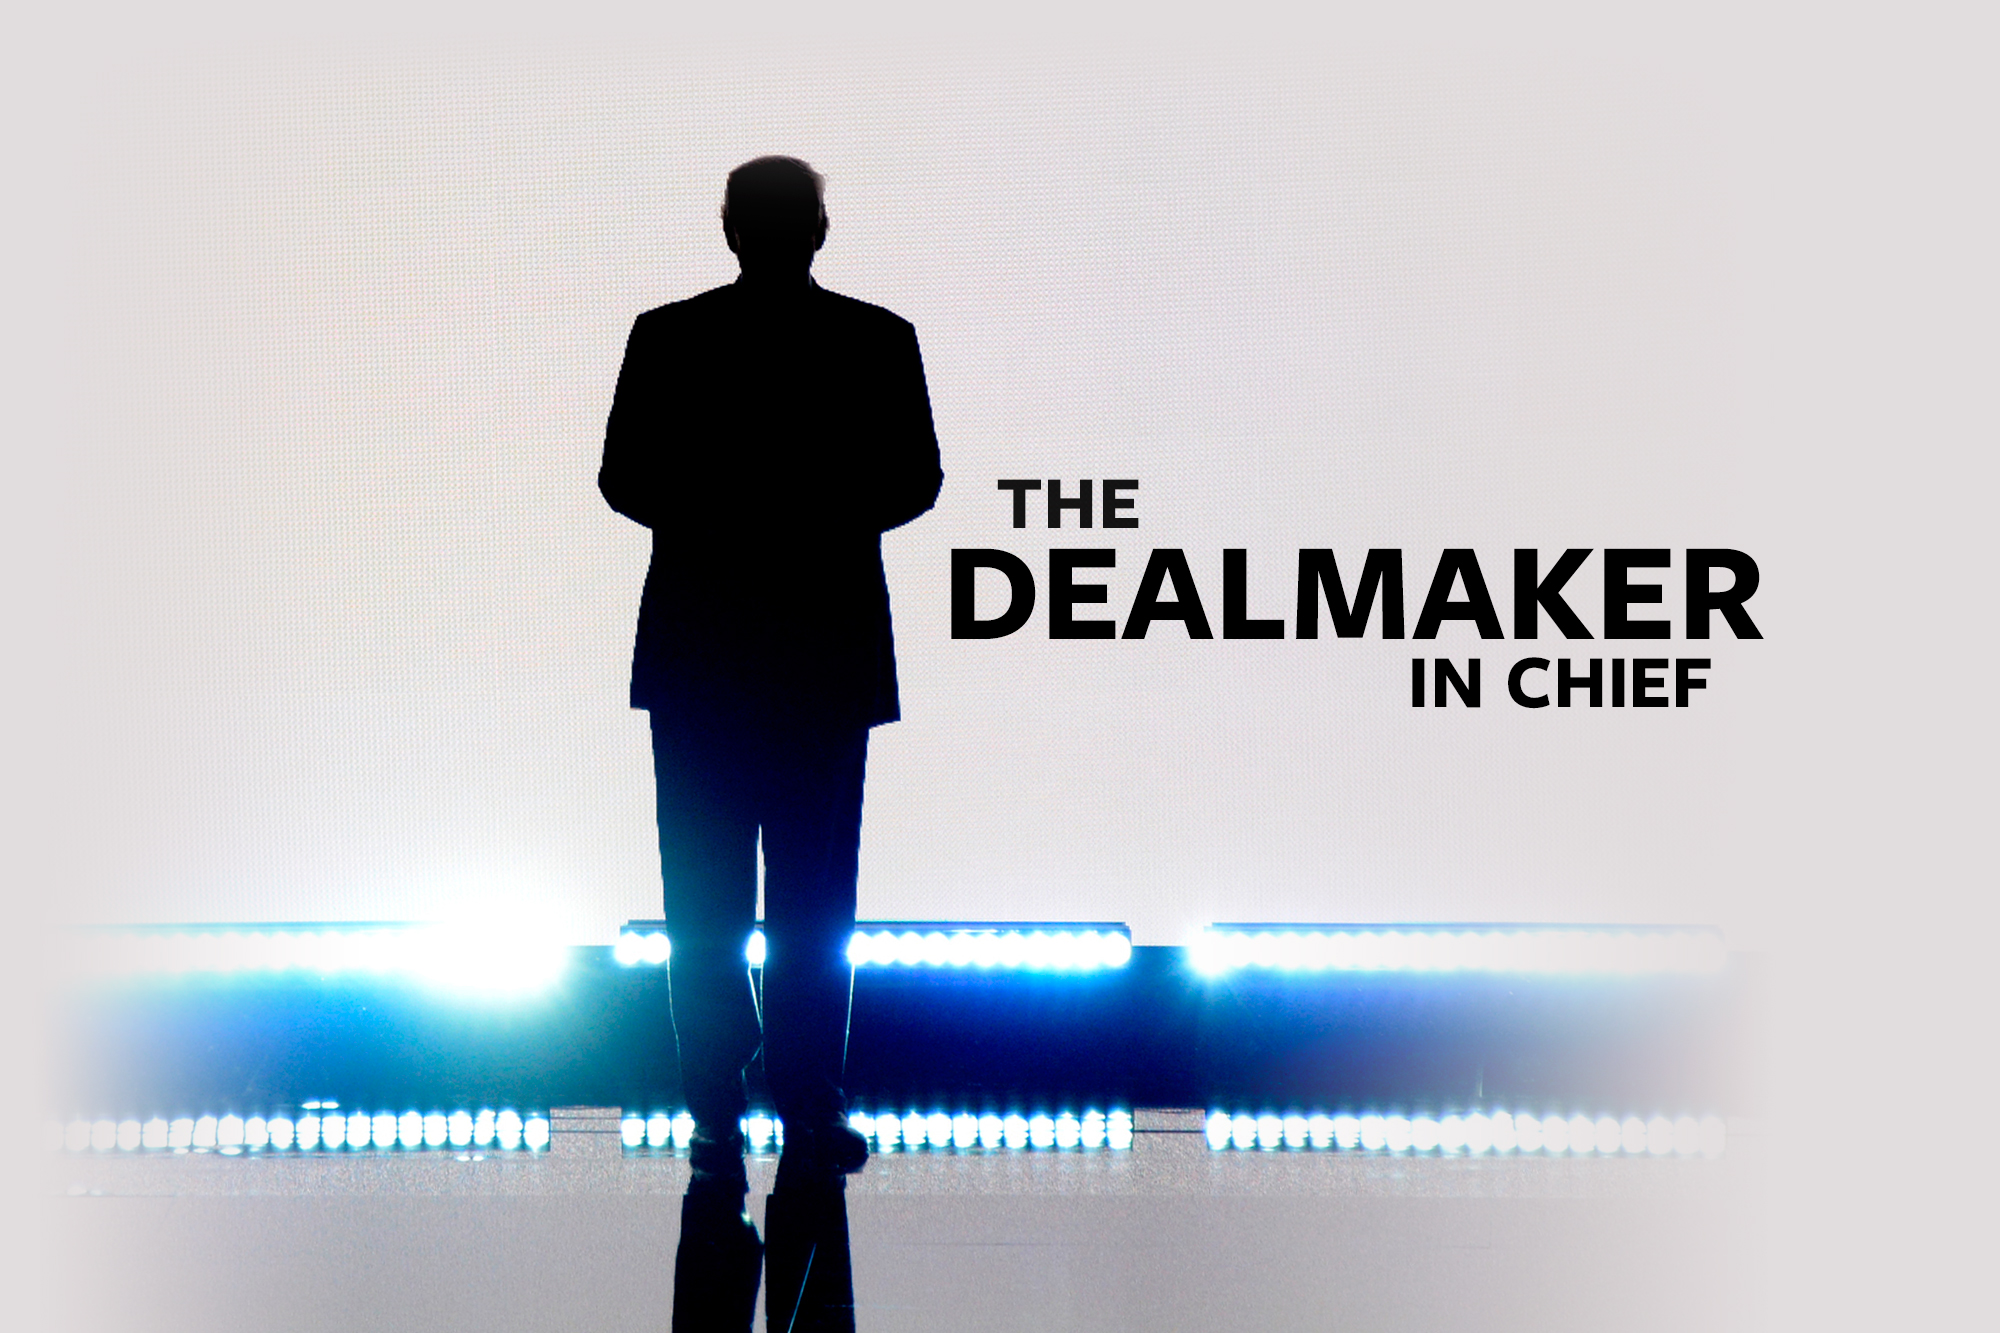 Deal maker. Dealmaker. Highest dealmaker.